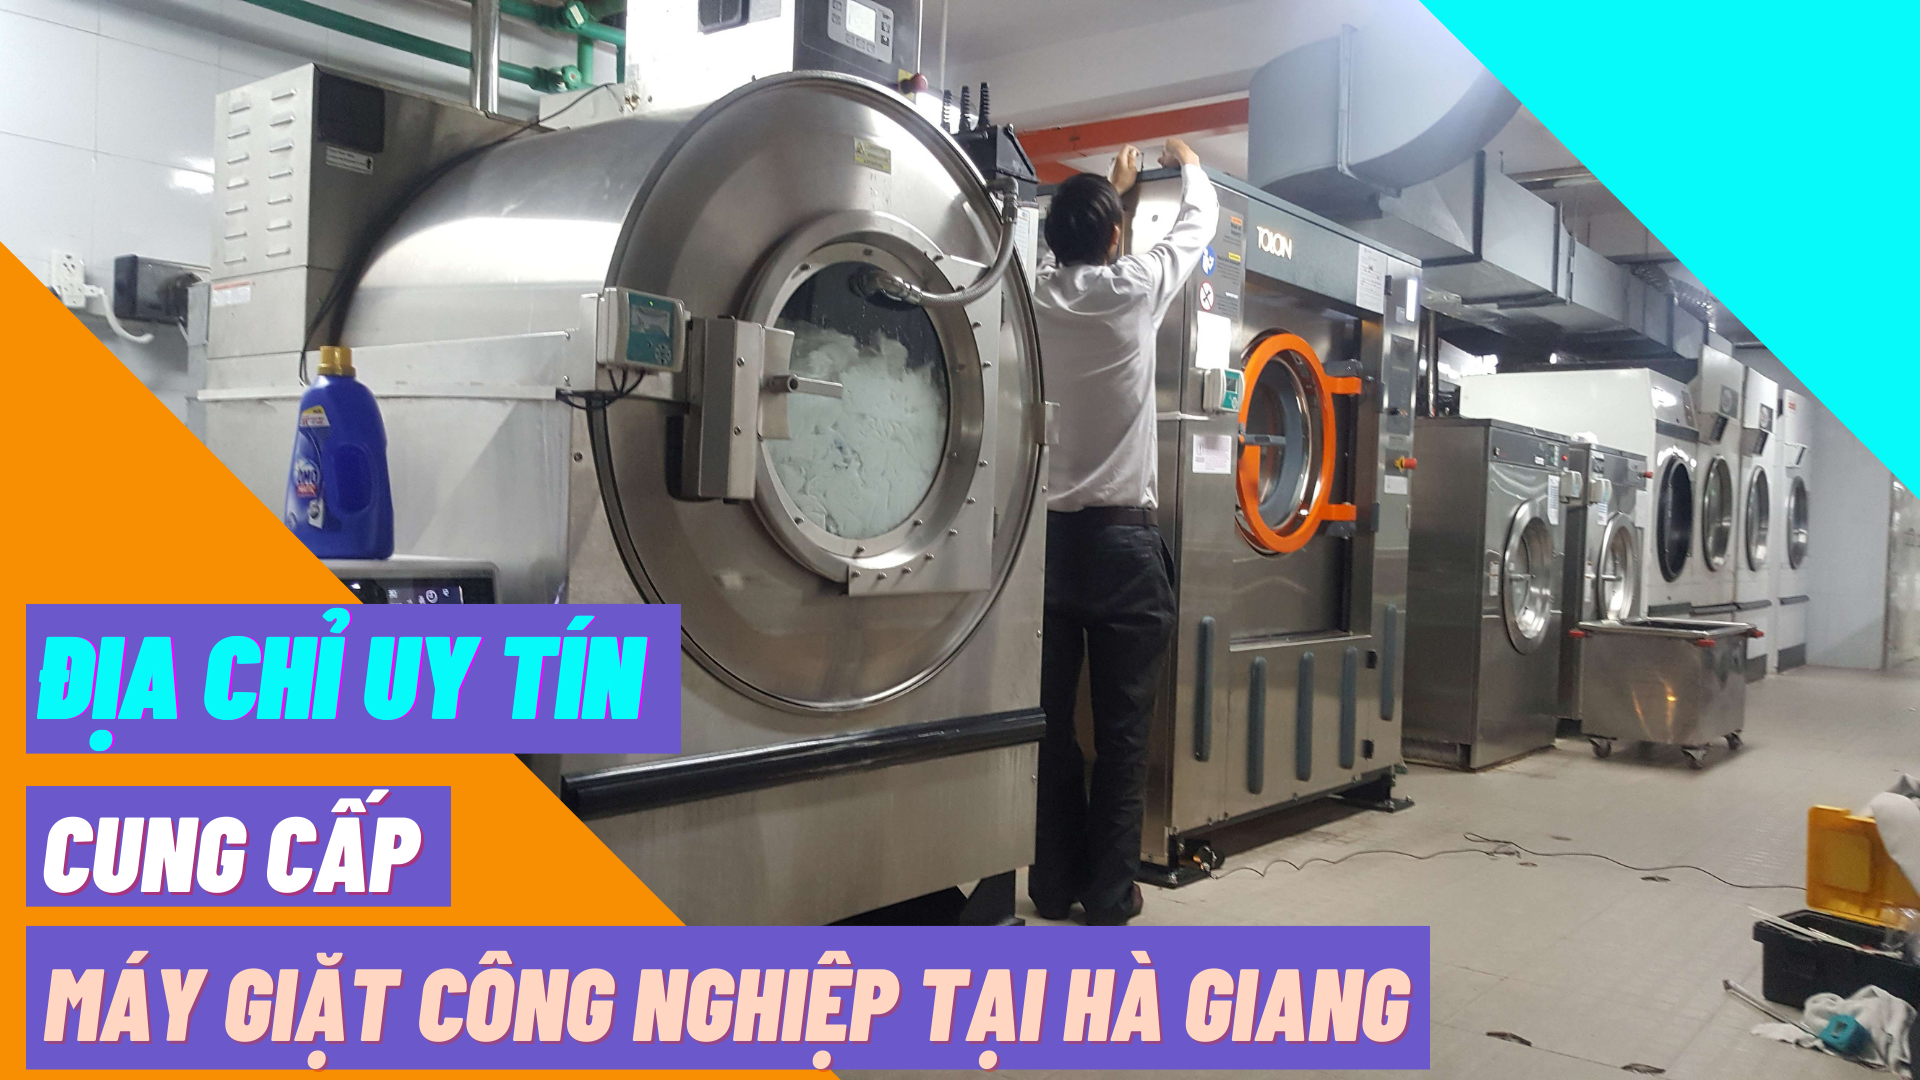 Địa chỉ uy tín cung cấp máy giặt công nghiệp tại Hà Giang